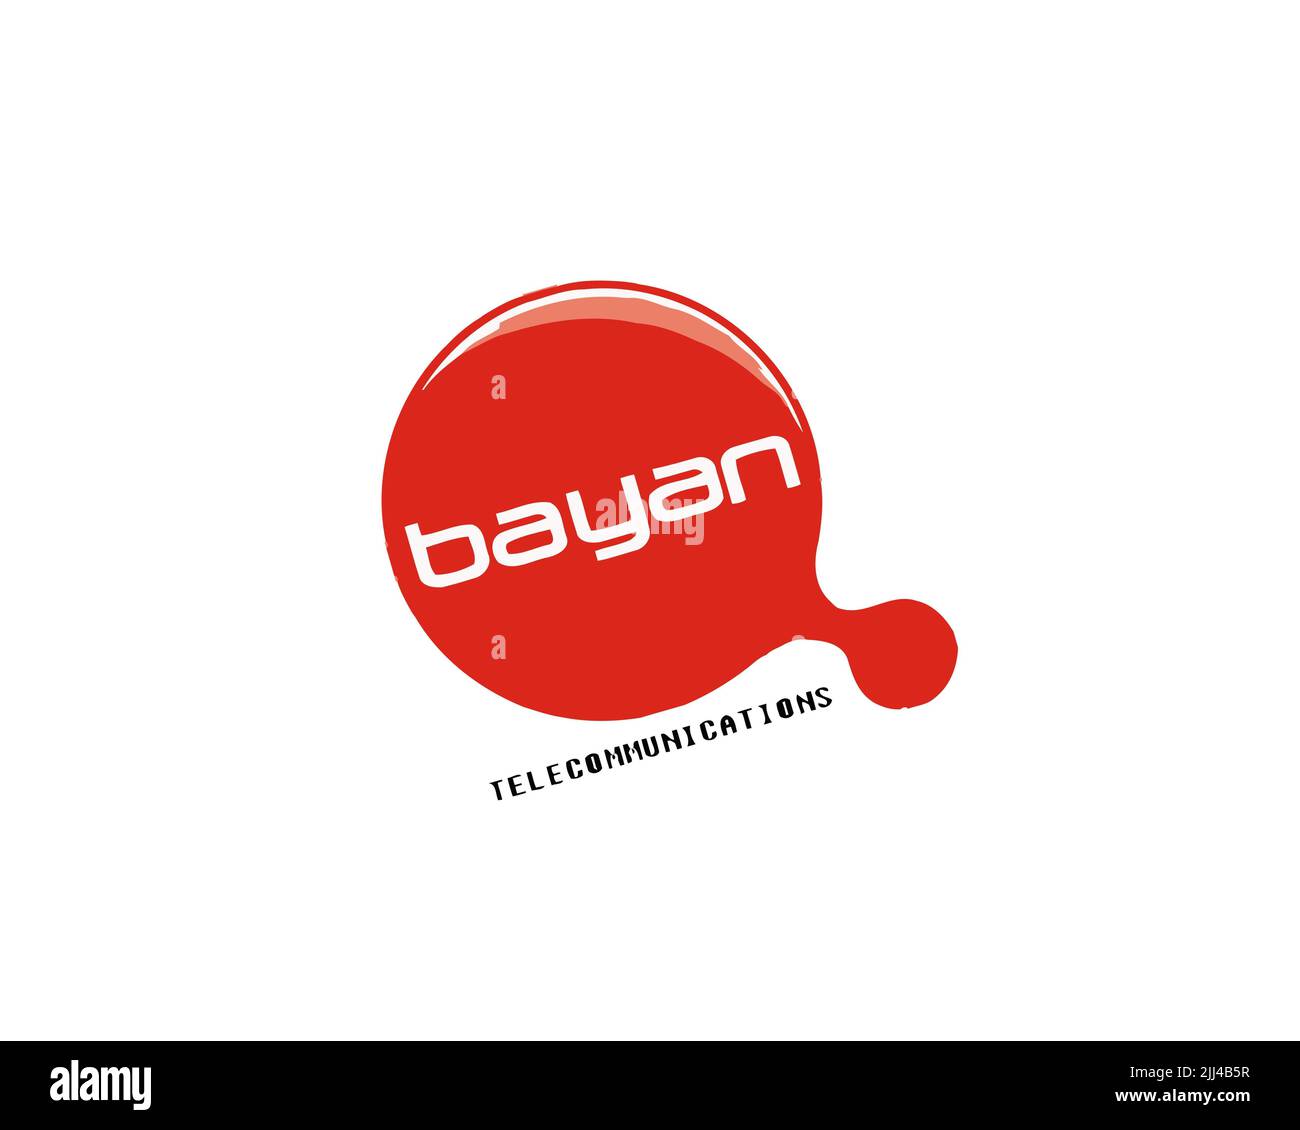 Bayan Telecommunications, logo ruotato, sfondo bianco Foto Stock